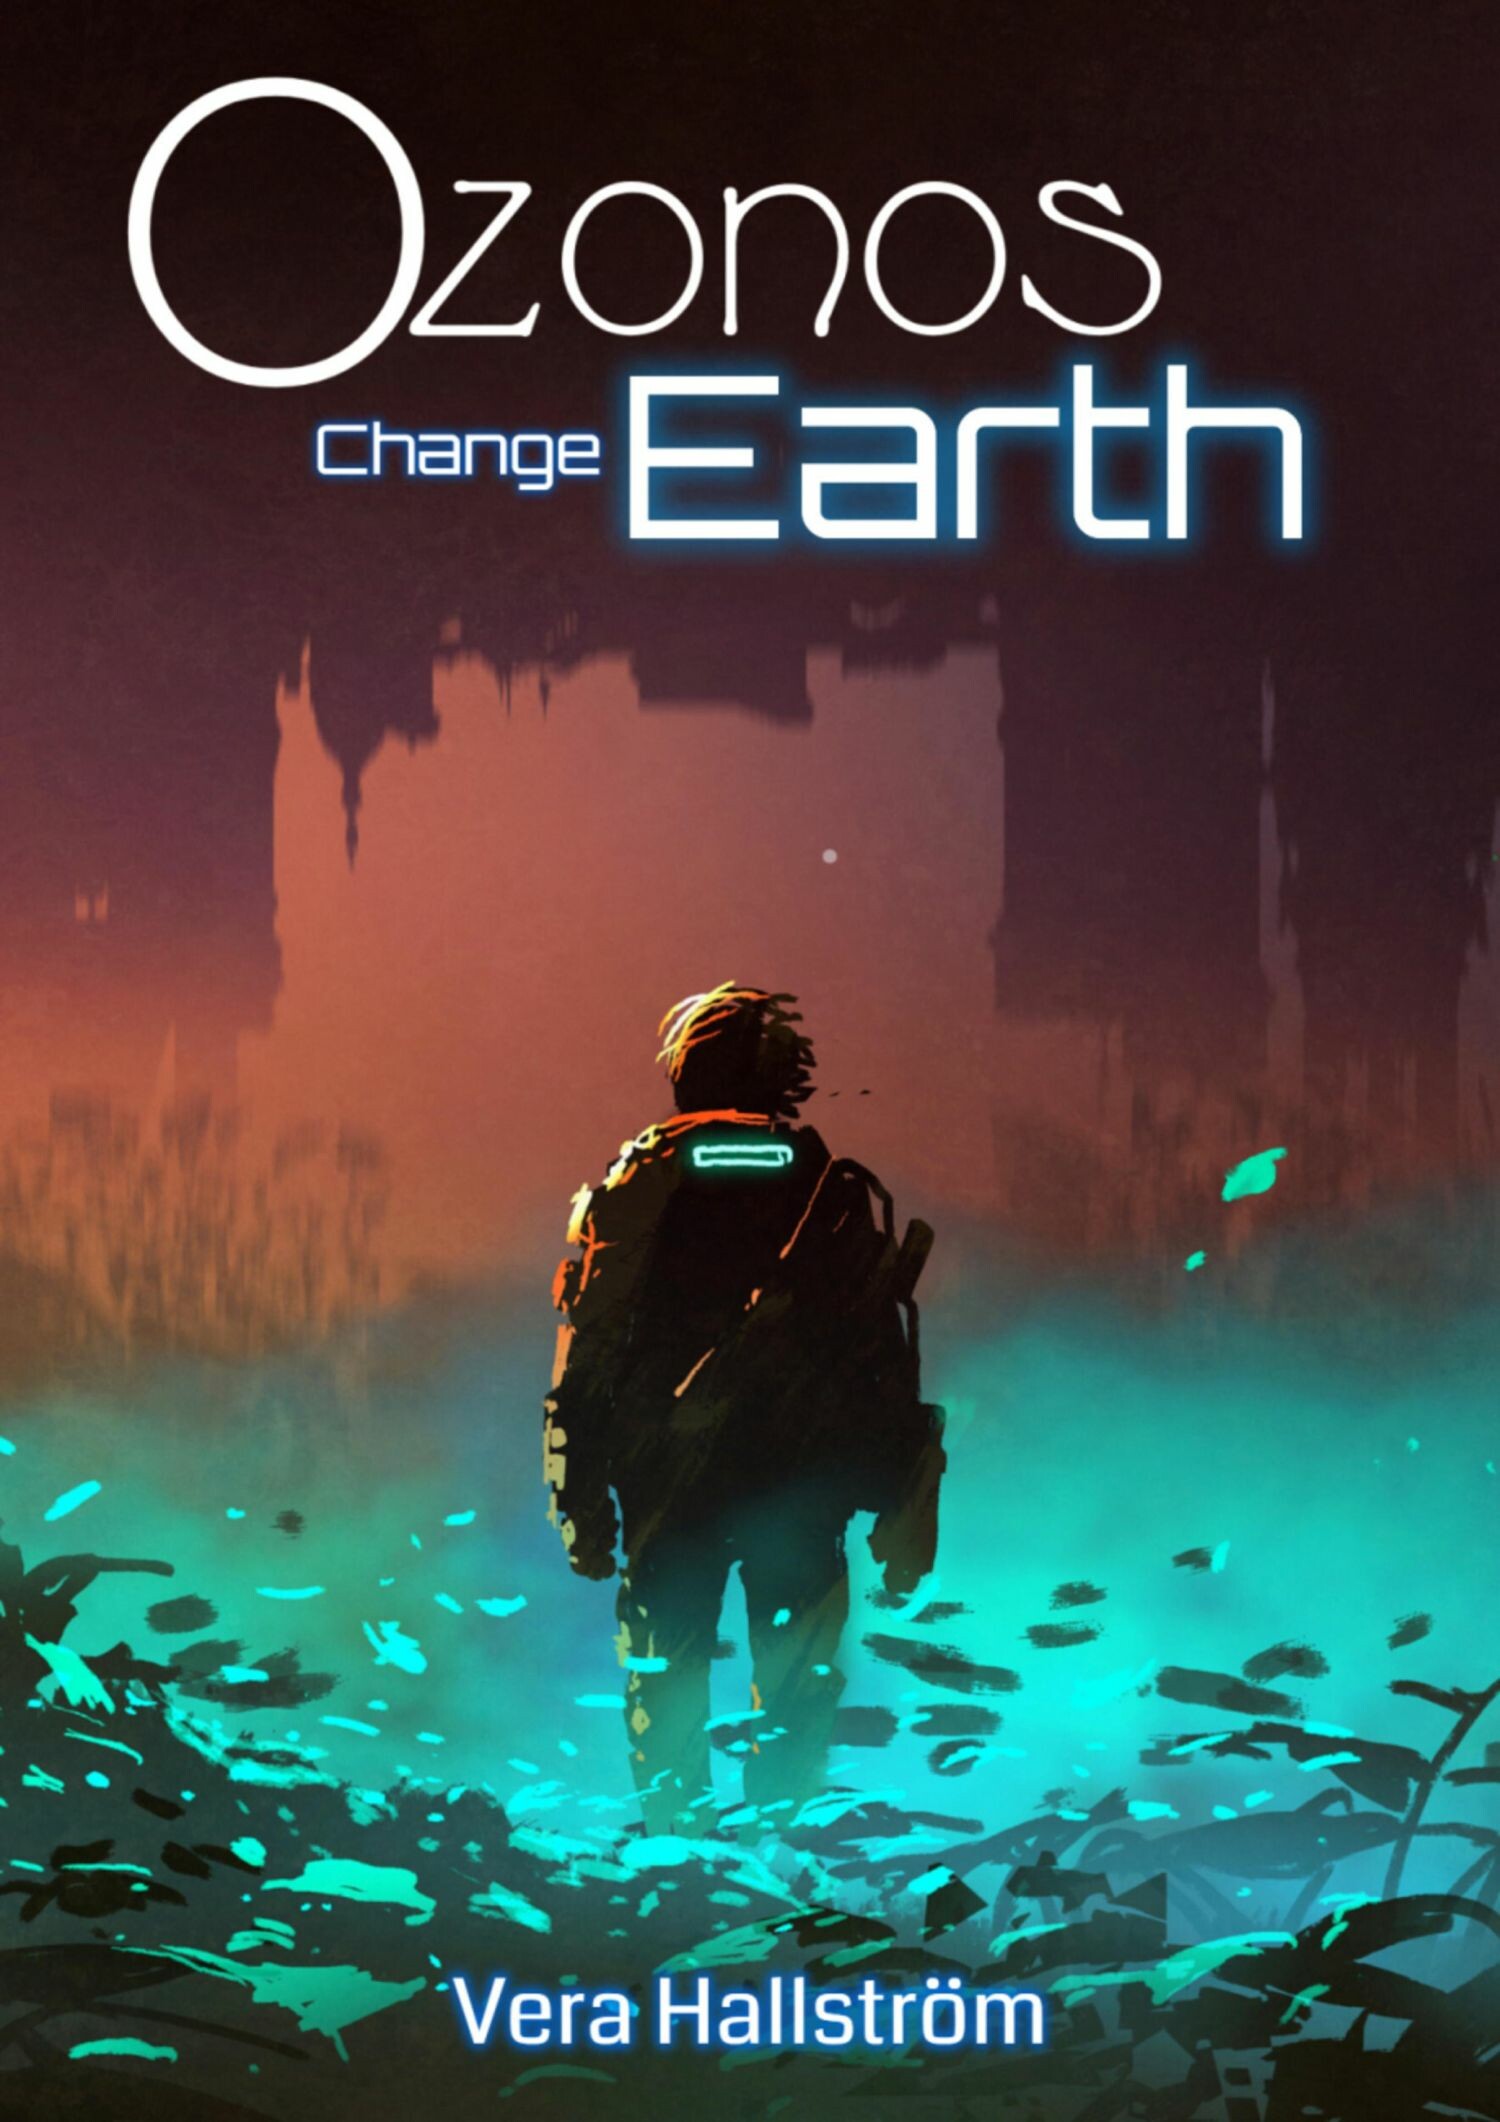 Ozonos Earth: Change